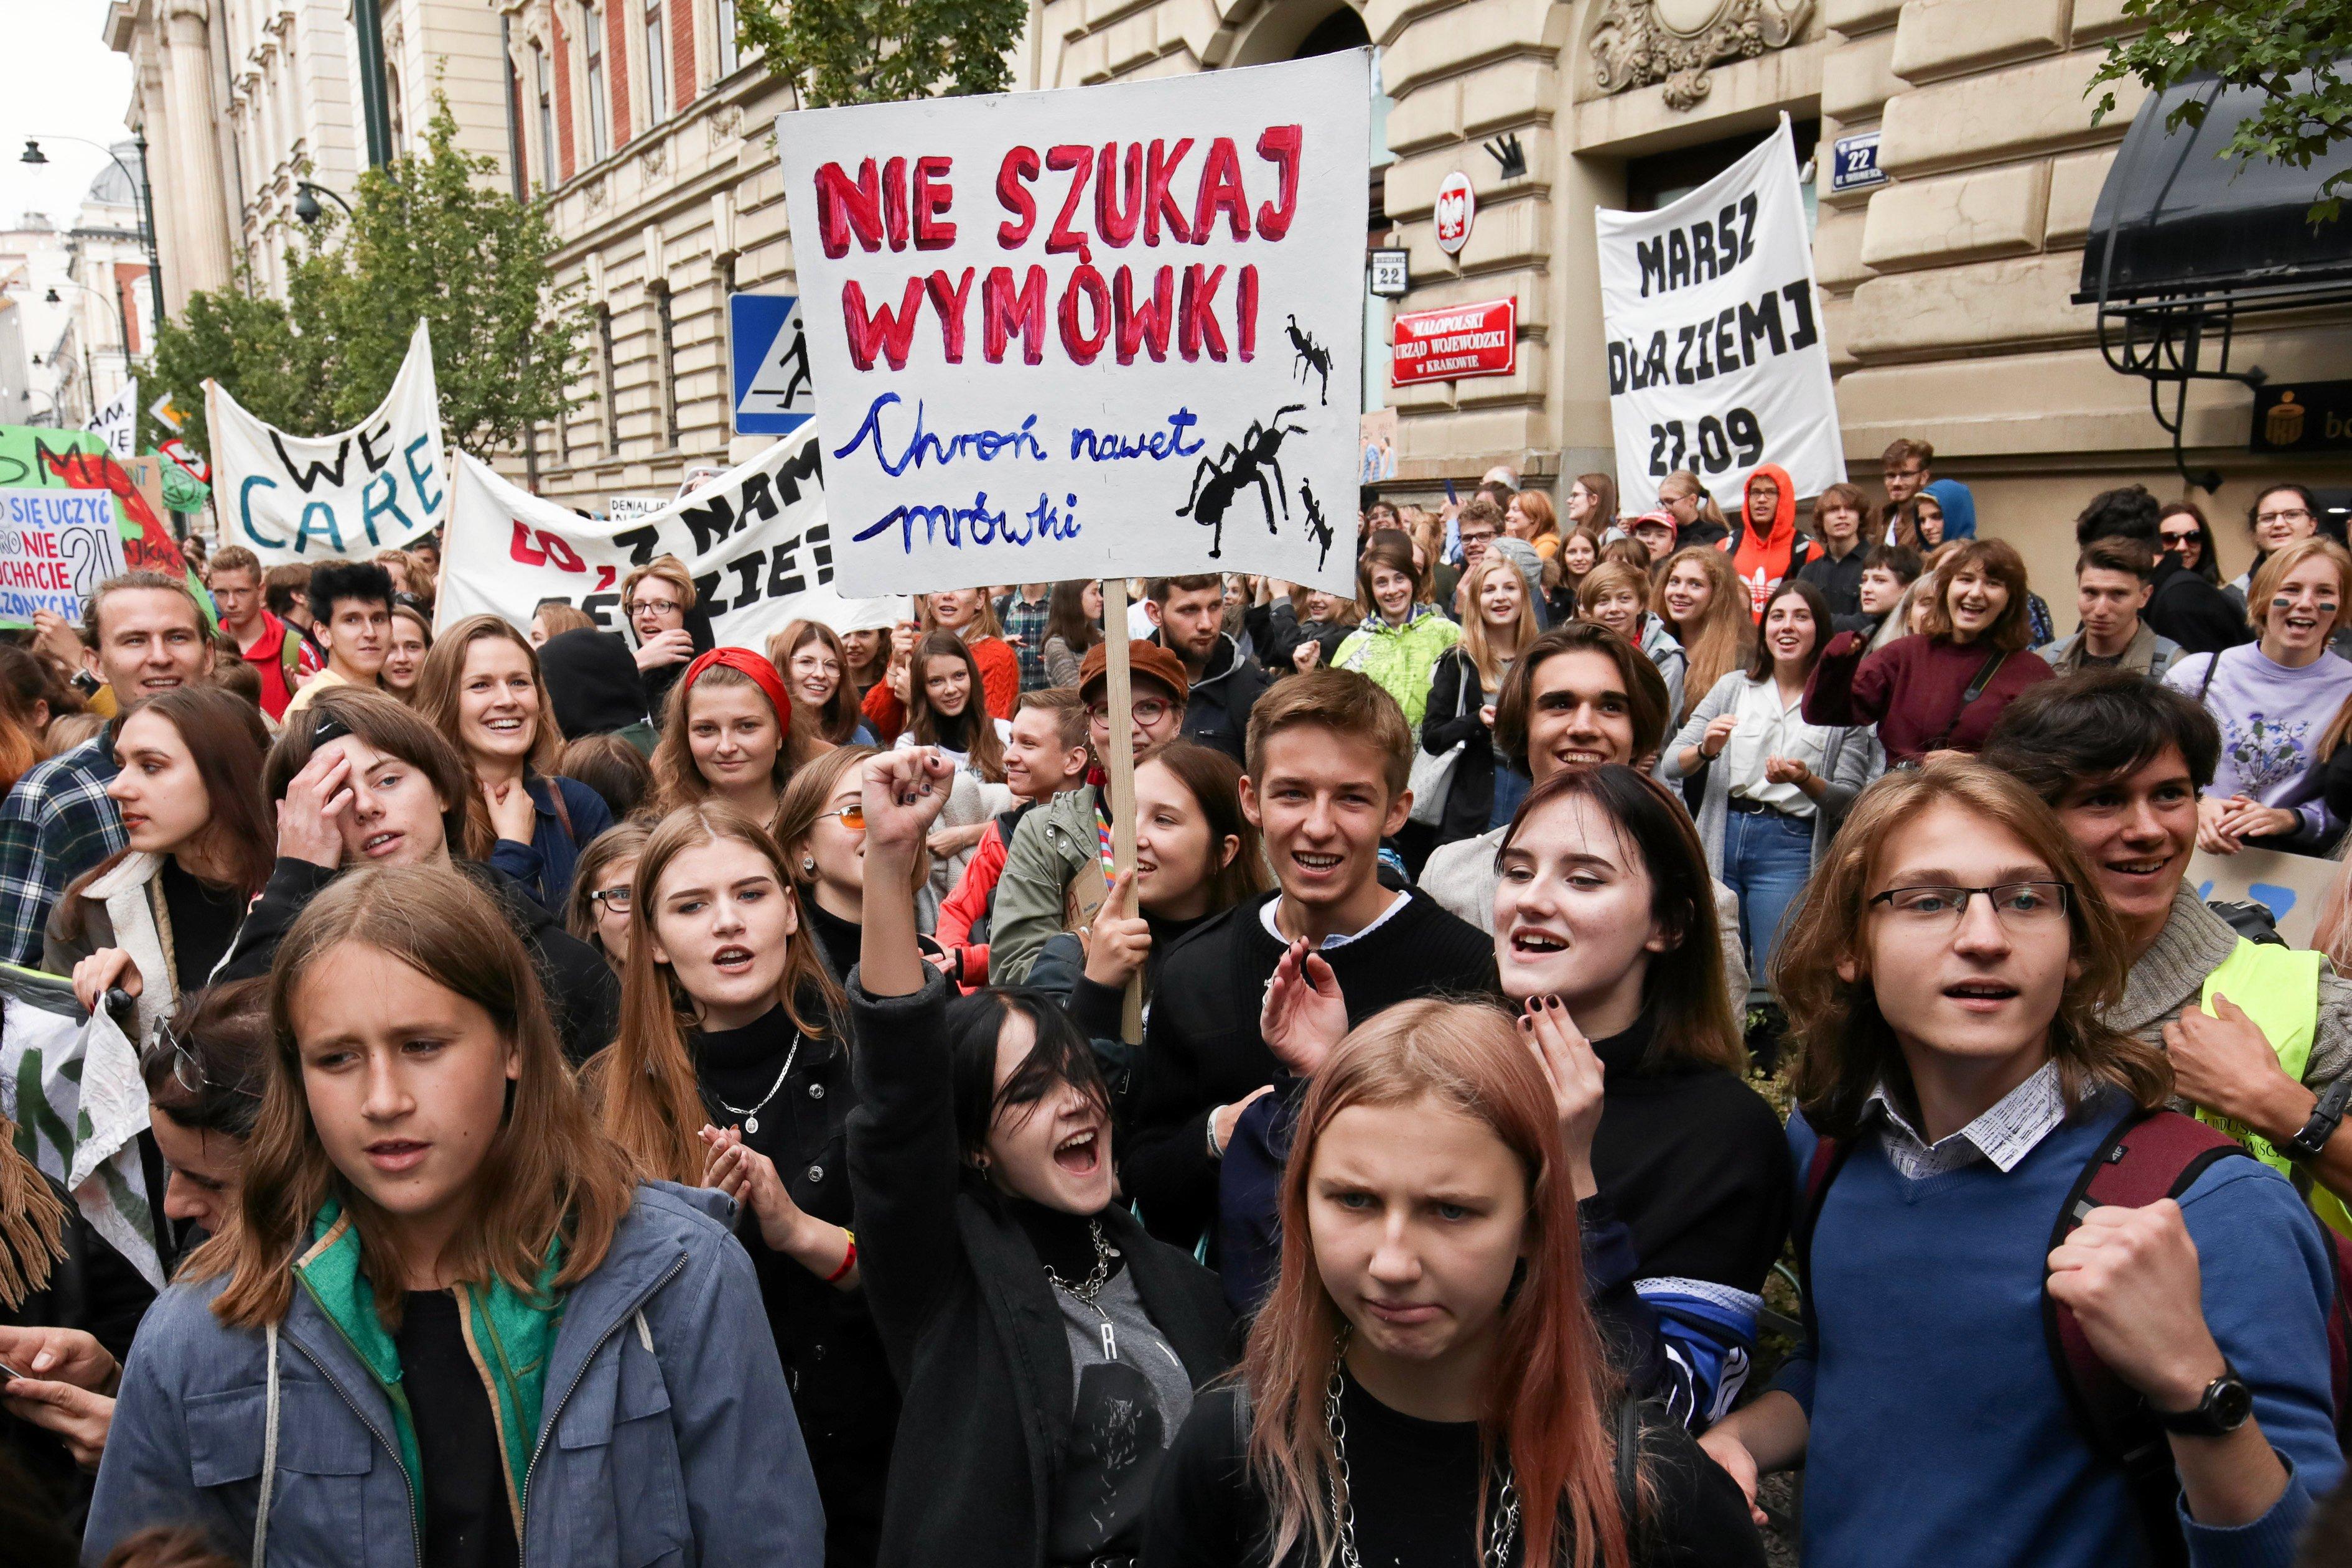 Tłum młodych ludzi na ulicy, nad nimi transparent z napisem "Nie szukaj wymówki"